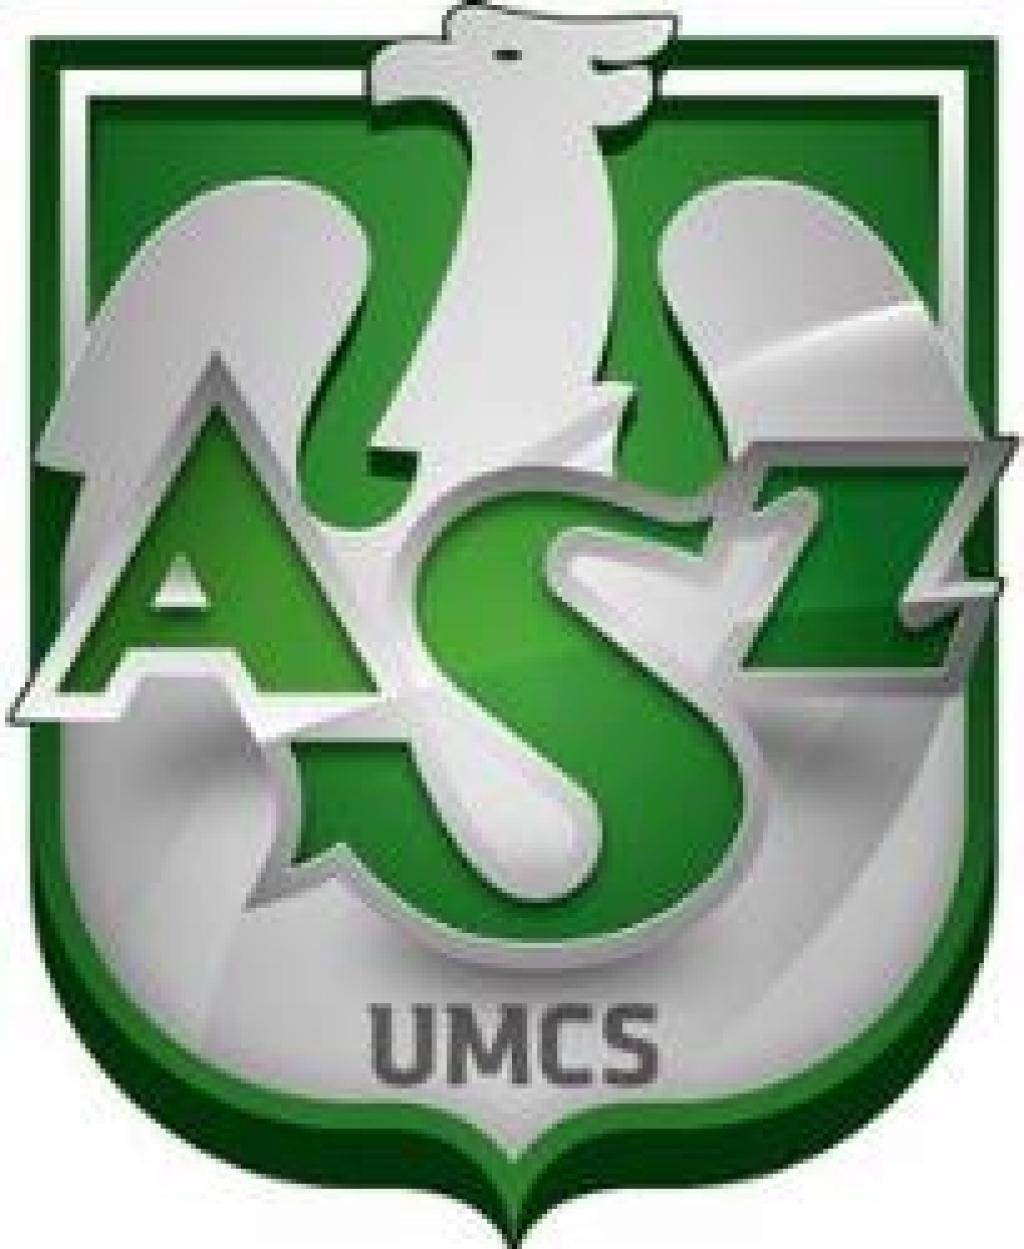 KU AZS UMCS Lublin